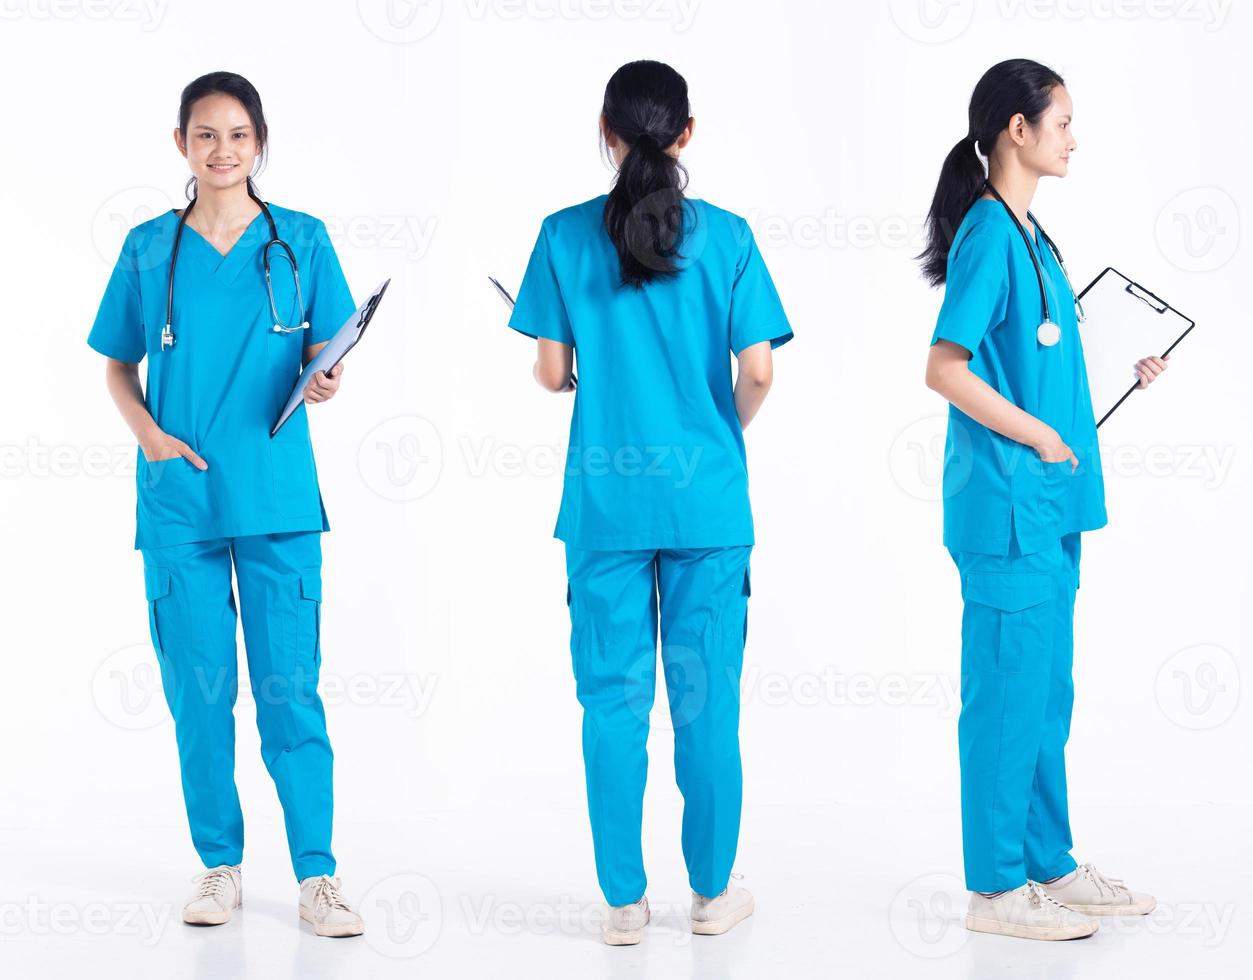 longitud completa de los años 20 joven enfermera de hospital de raza mixta mujer, 360 vista frontal trasera trasera, use uniforme azul de estetoscopio. La doctora siente una sonrisa feliz sobre un fondo blanco aislado foto